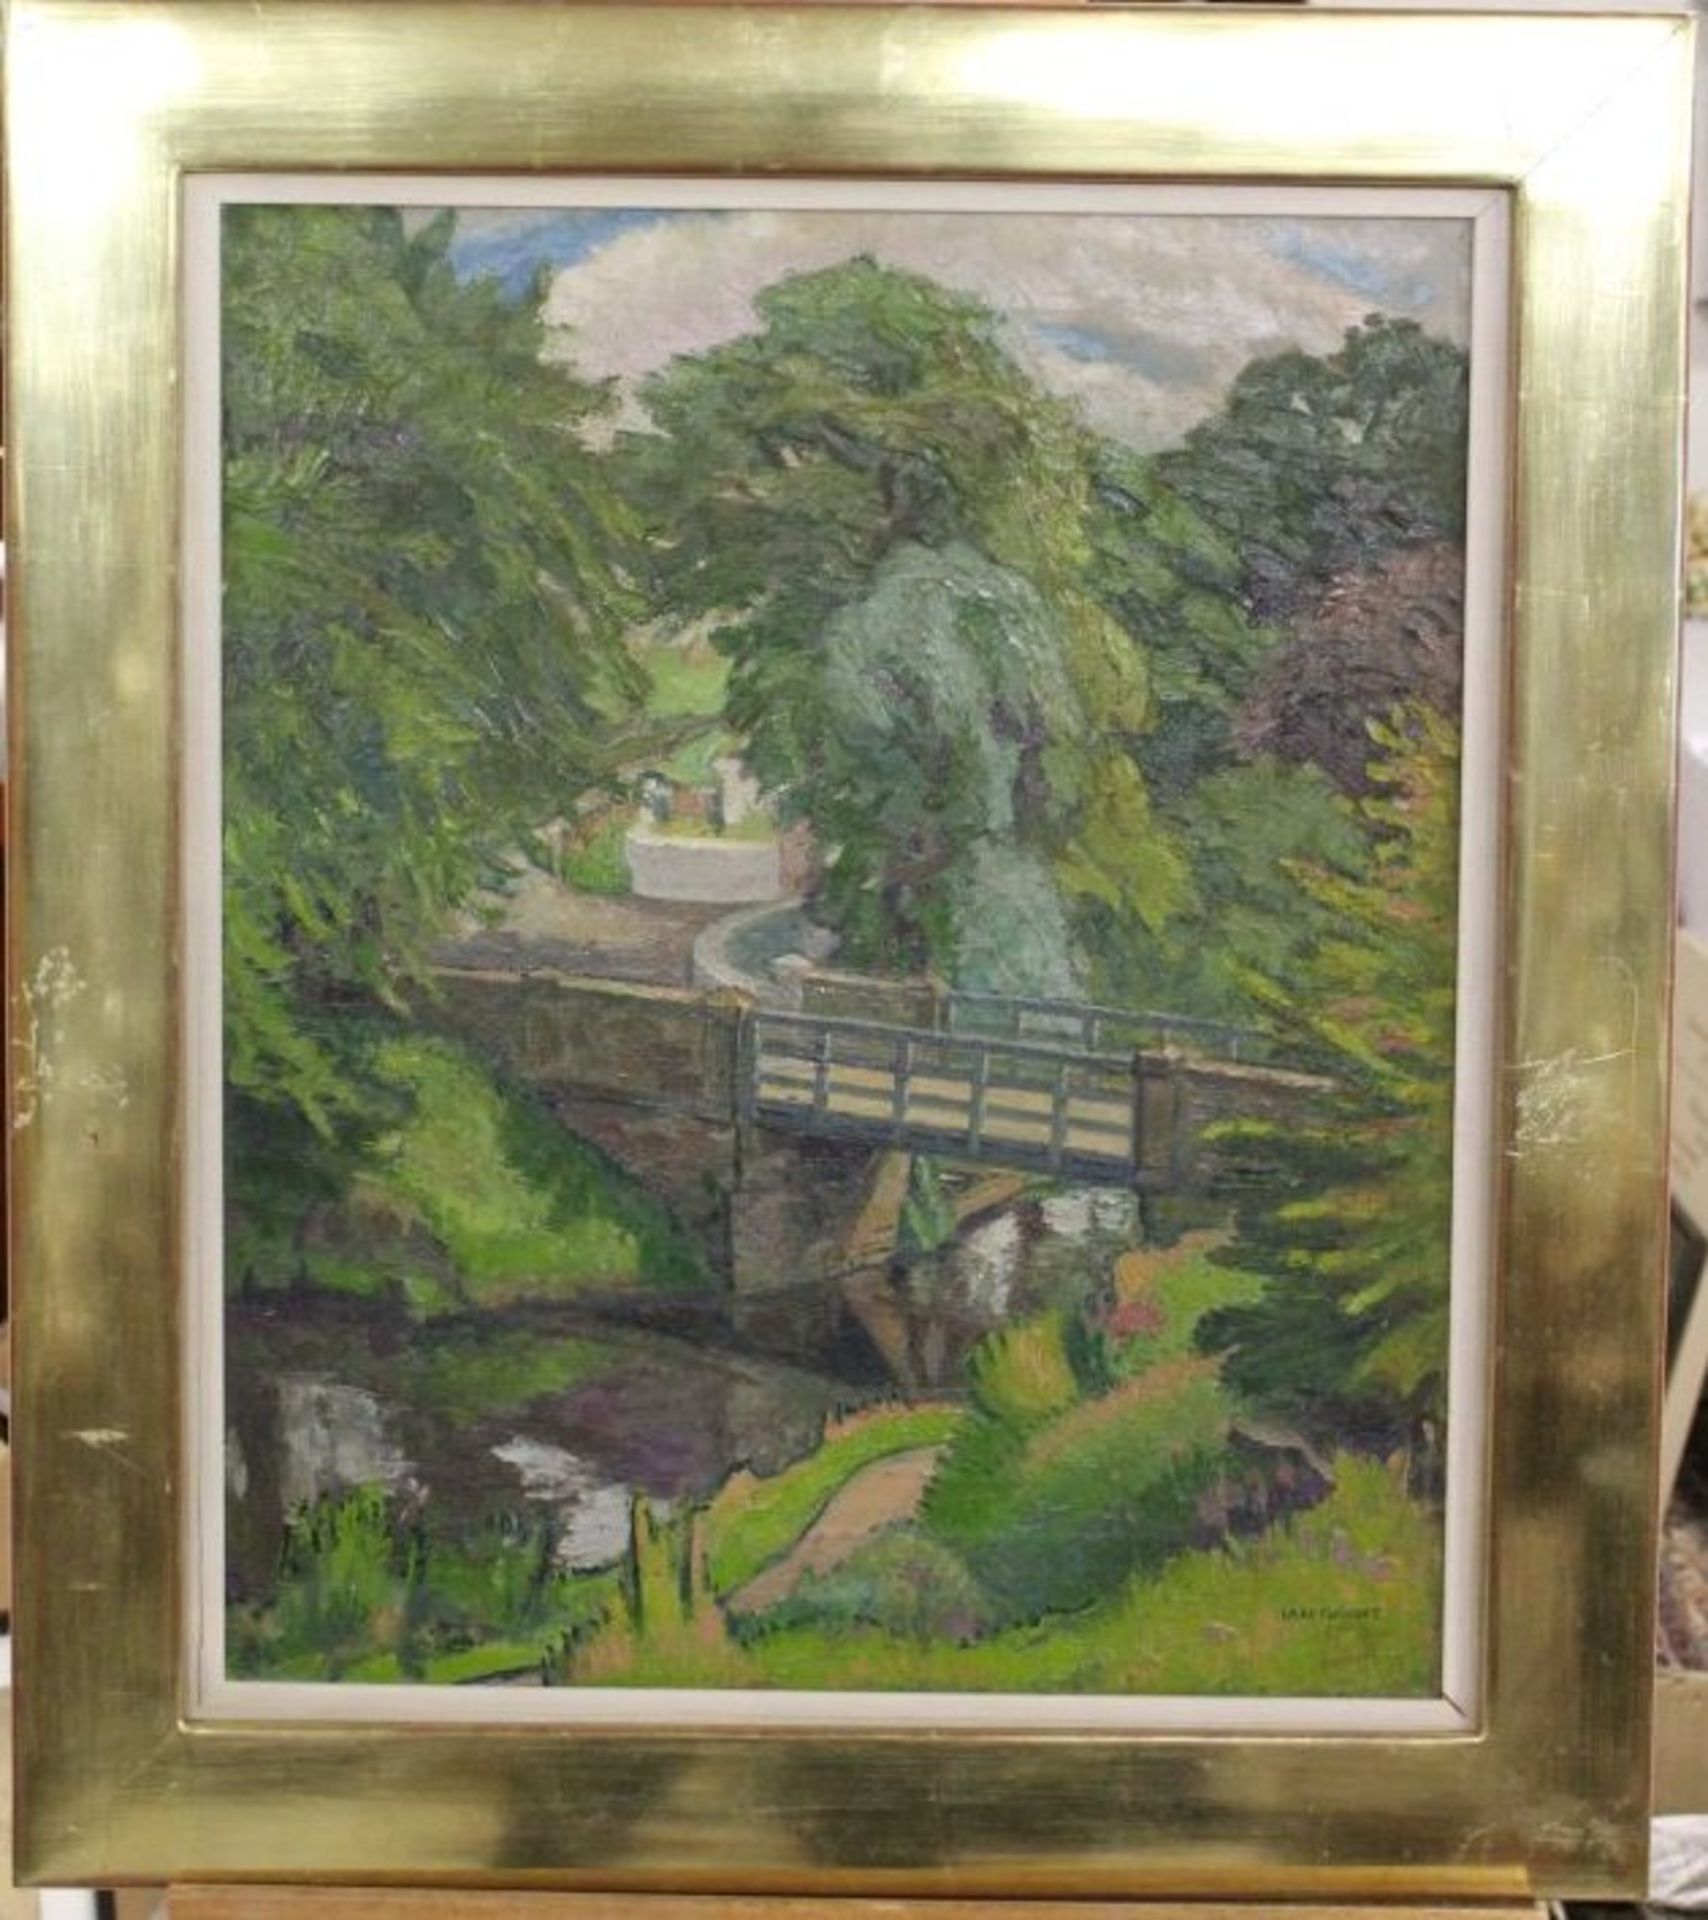 Ian McDonald GRANT (1904-1993), Brücke, Öl/Leinwand, erworben in einer Galerie in Basel 1989 für - Image 3 of 3